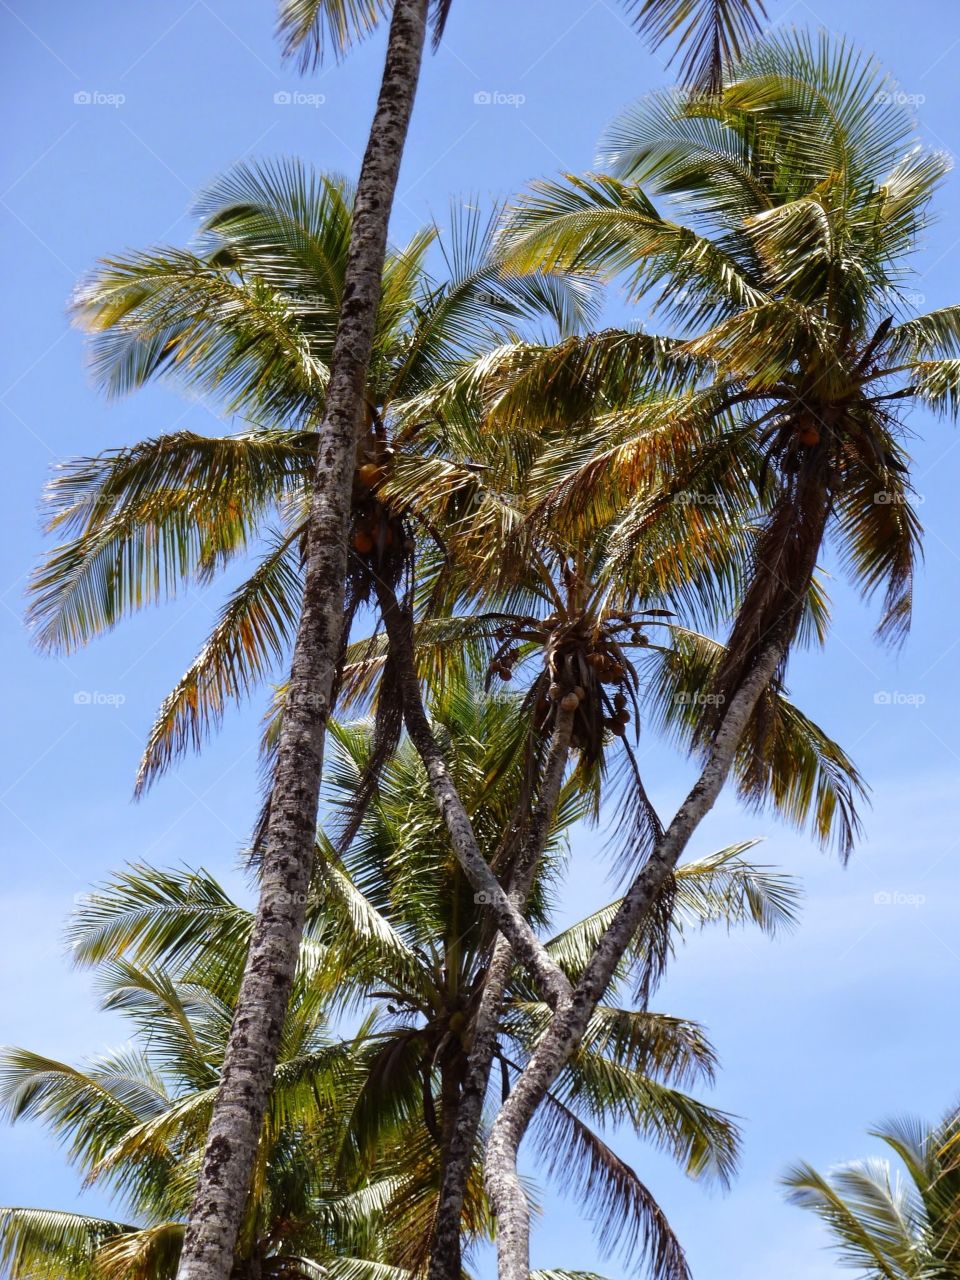 Unique palm tree. V-shape Palm tree in Bahia